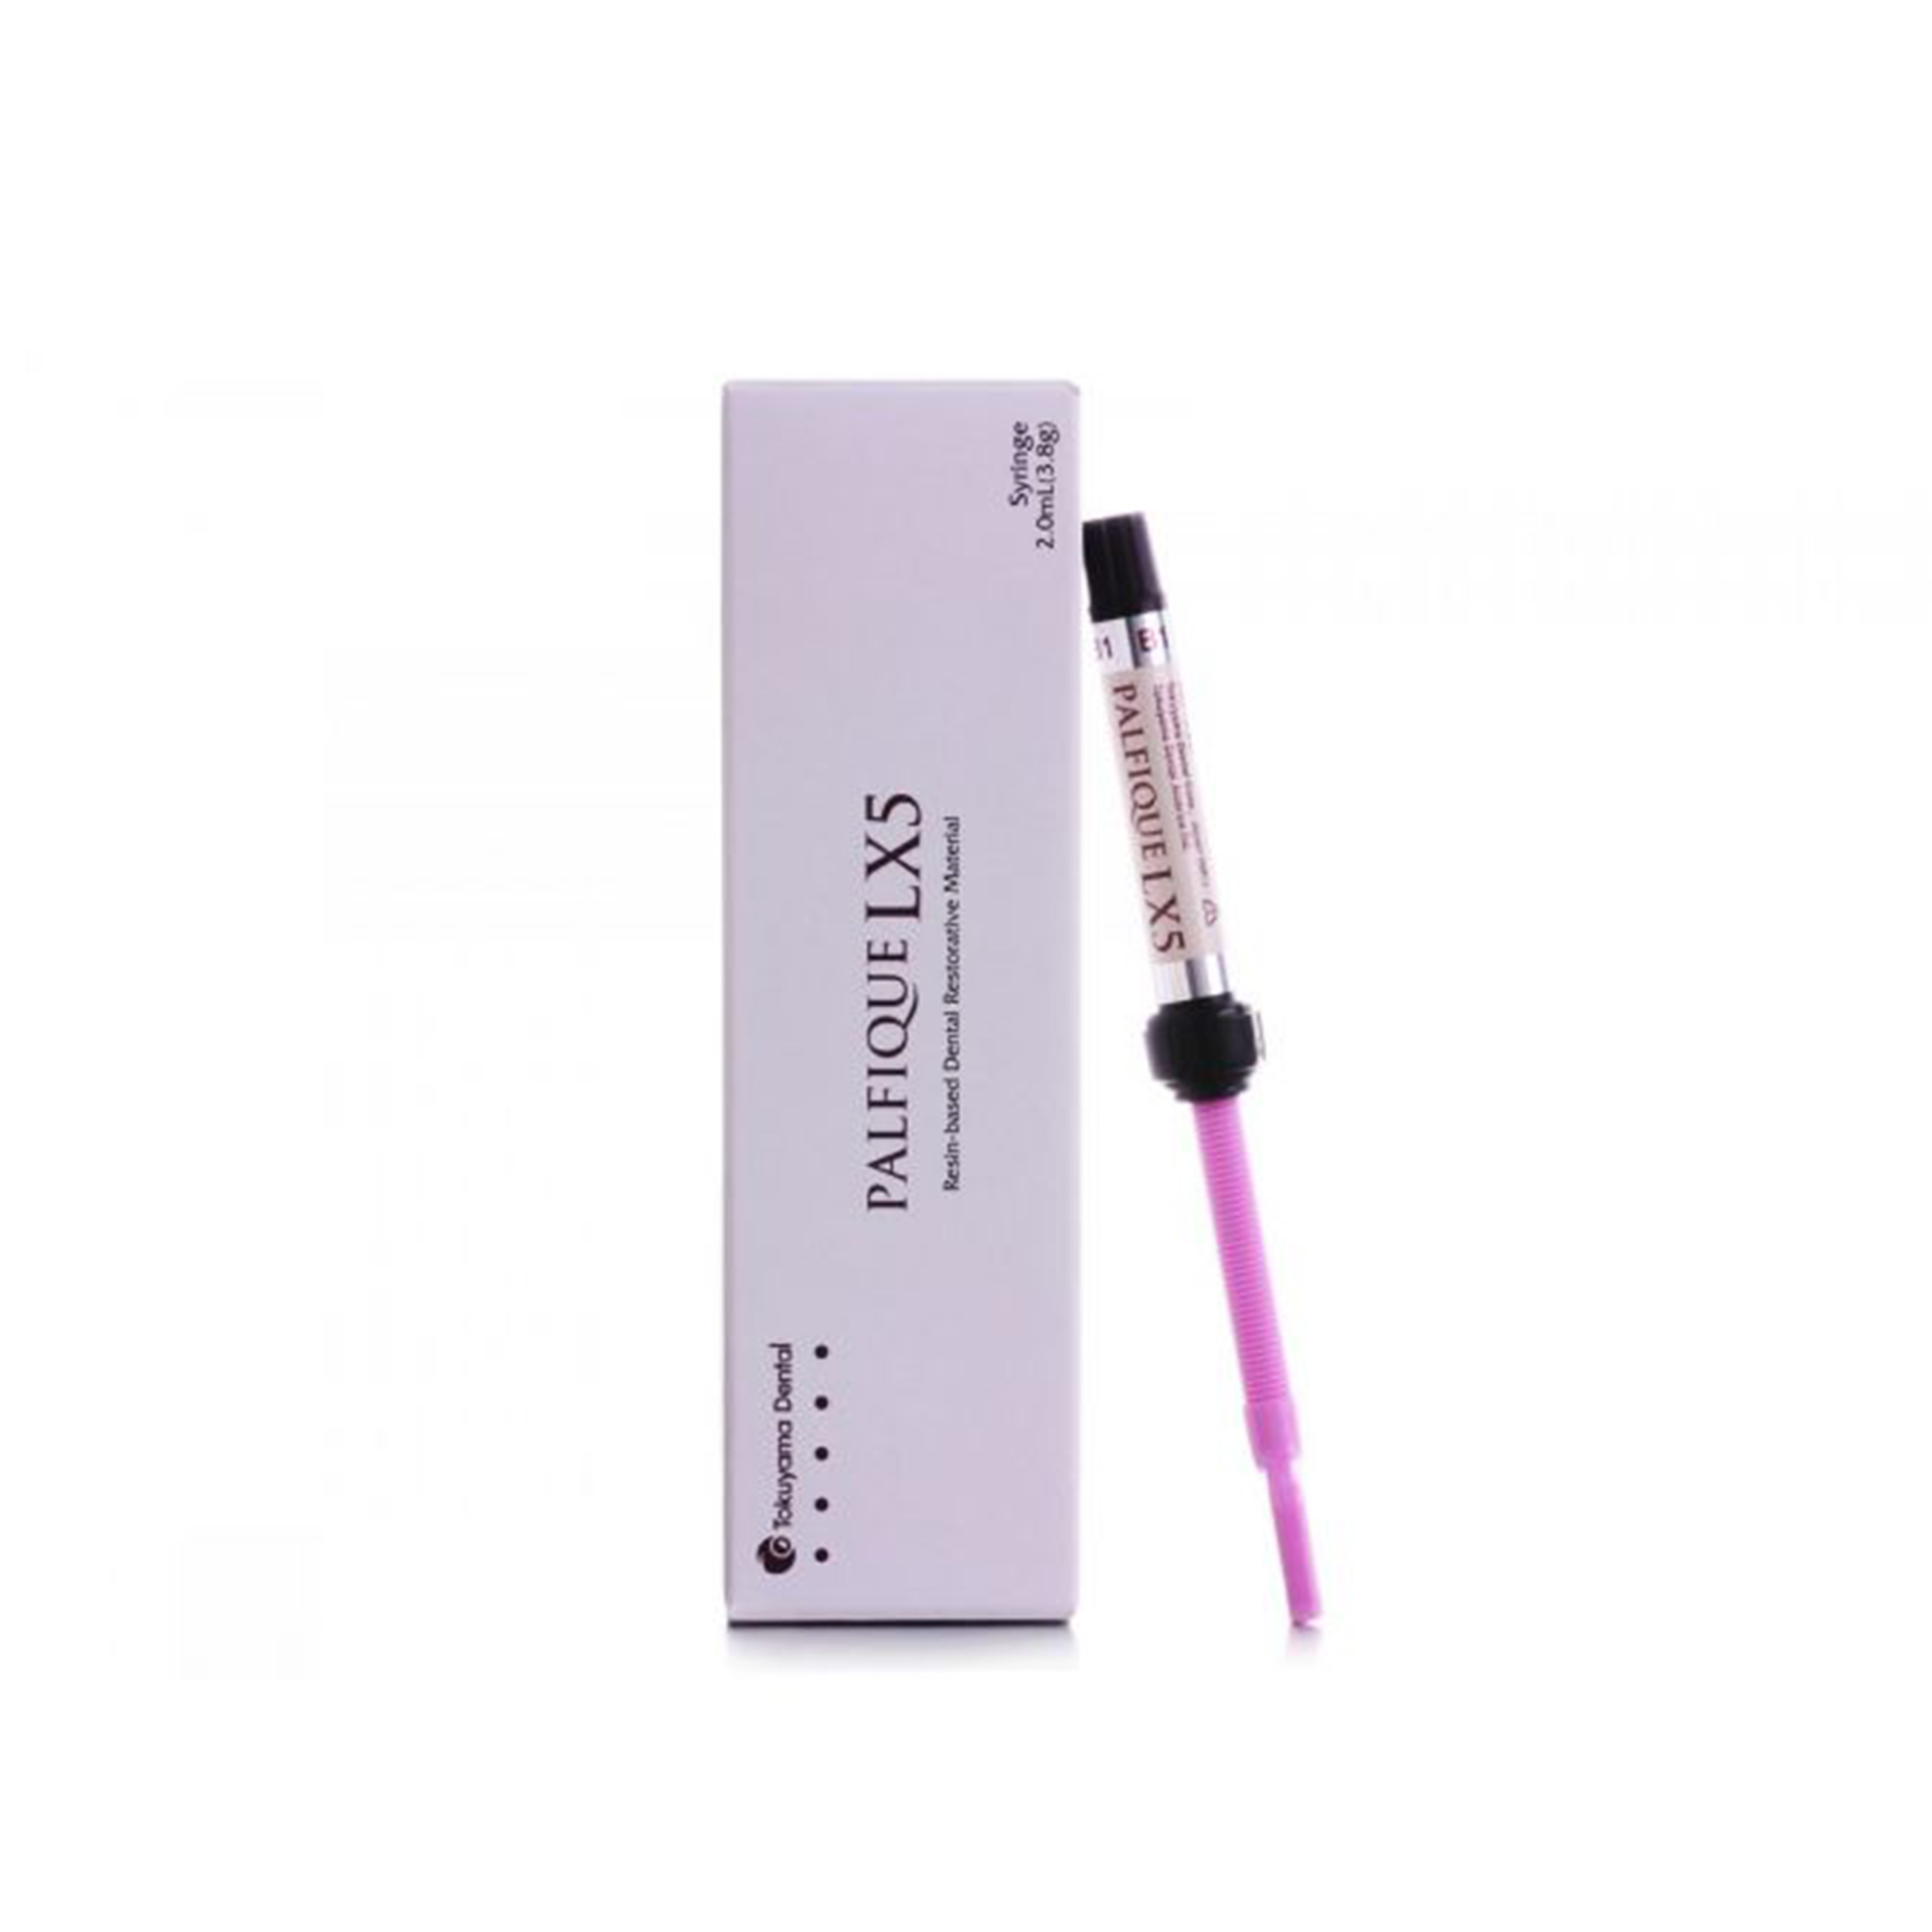 Tokuyama Palfique Lx5 Syringe 3.8gm Refill A3.5